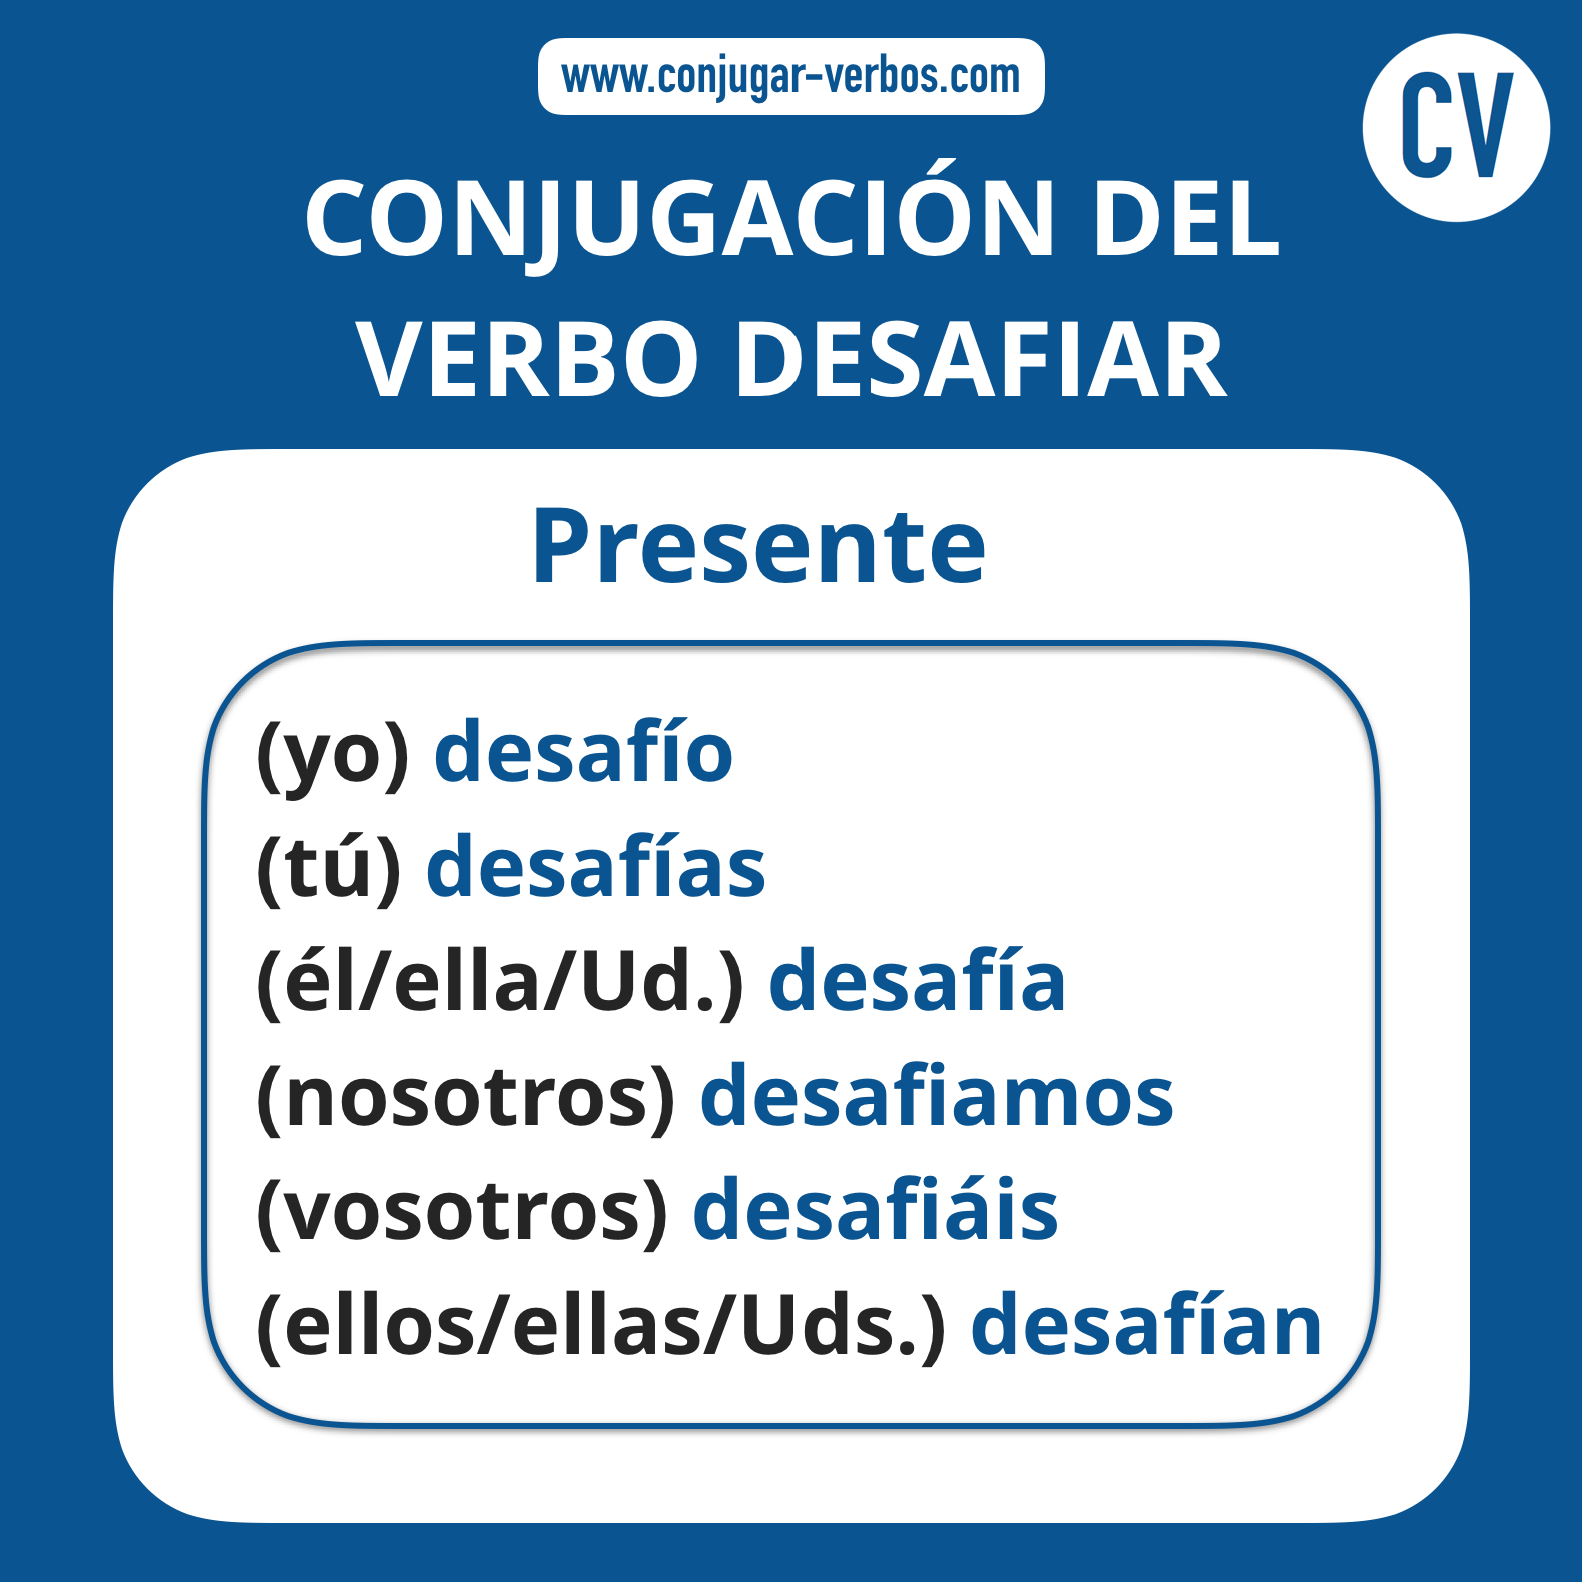 Conjugacion del verbo desafiar | Conjugacion desafiar